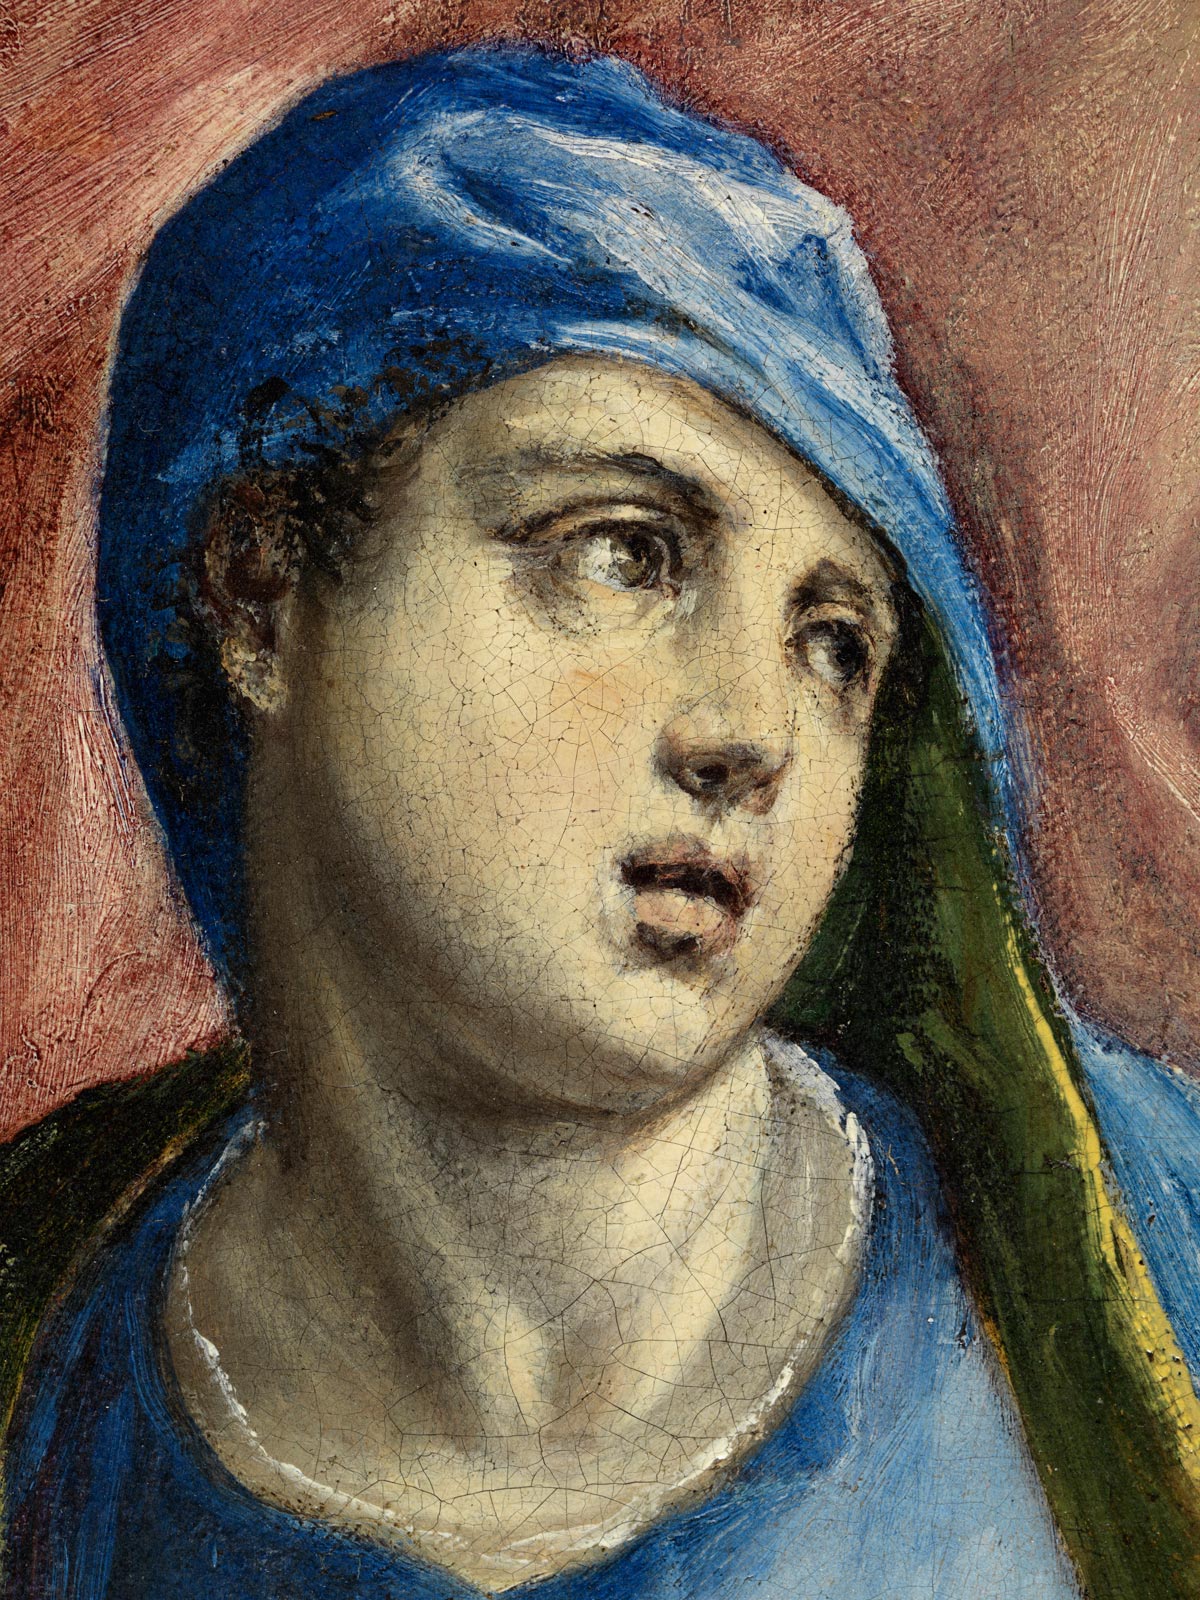 El+Greco-1541-1614 (208).jpg